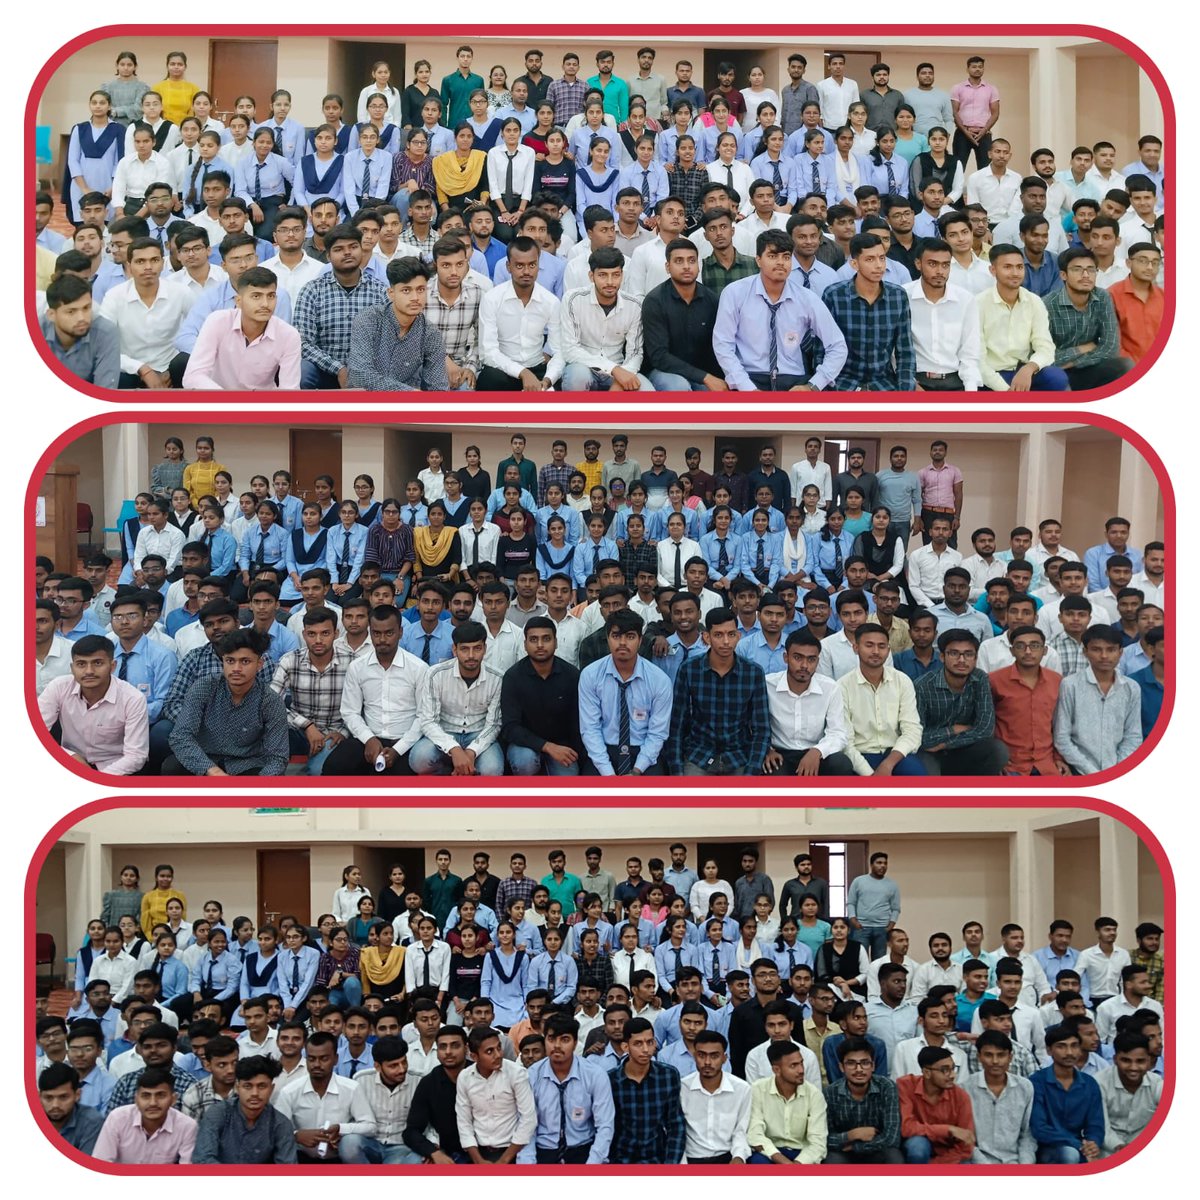 समस्तीपुर जिले के सरायरंजन प्रखंड अंतर्गत नरघोघी स्थित राजकीय अभियंत्रण महाविधालय के टेक्निकल क्लब एसिमो और आईआईटी खड़गपुर के टेकनोमैनेजमेंट फेस्ट क्षितिज ने संयुकत होकर कैस्केड नामक प्रतियोगिता का सफलतापूर्क आयोजन किया।
#Samastipur #Sarairanjan #Engineering #EngineeringCollege